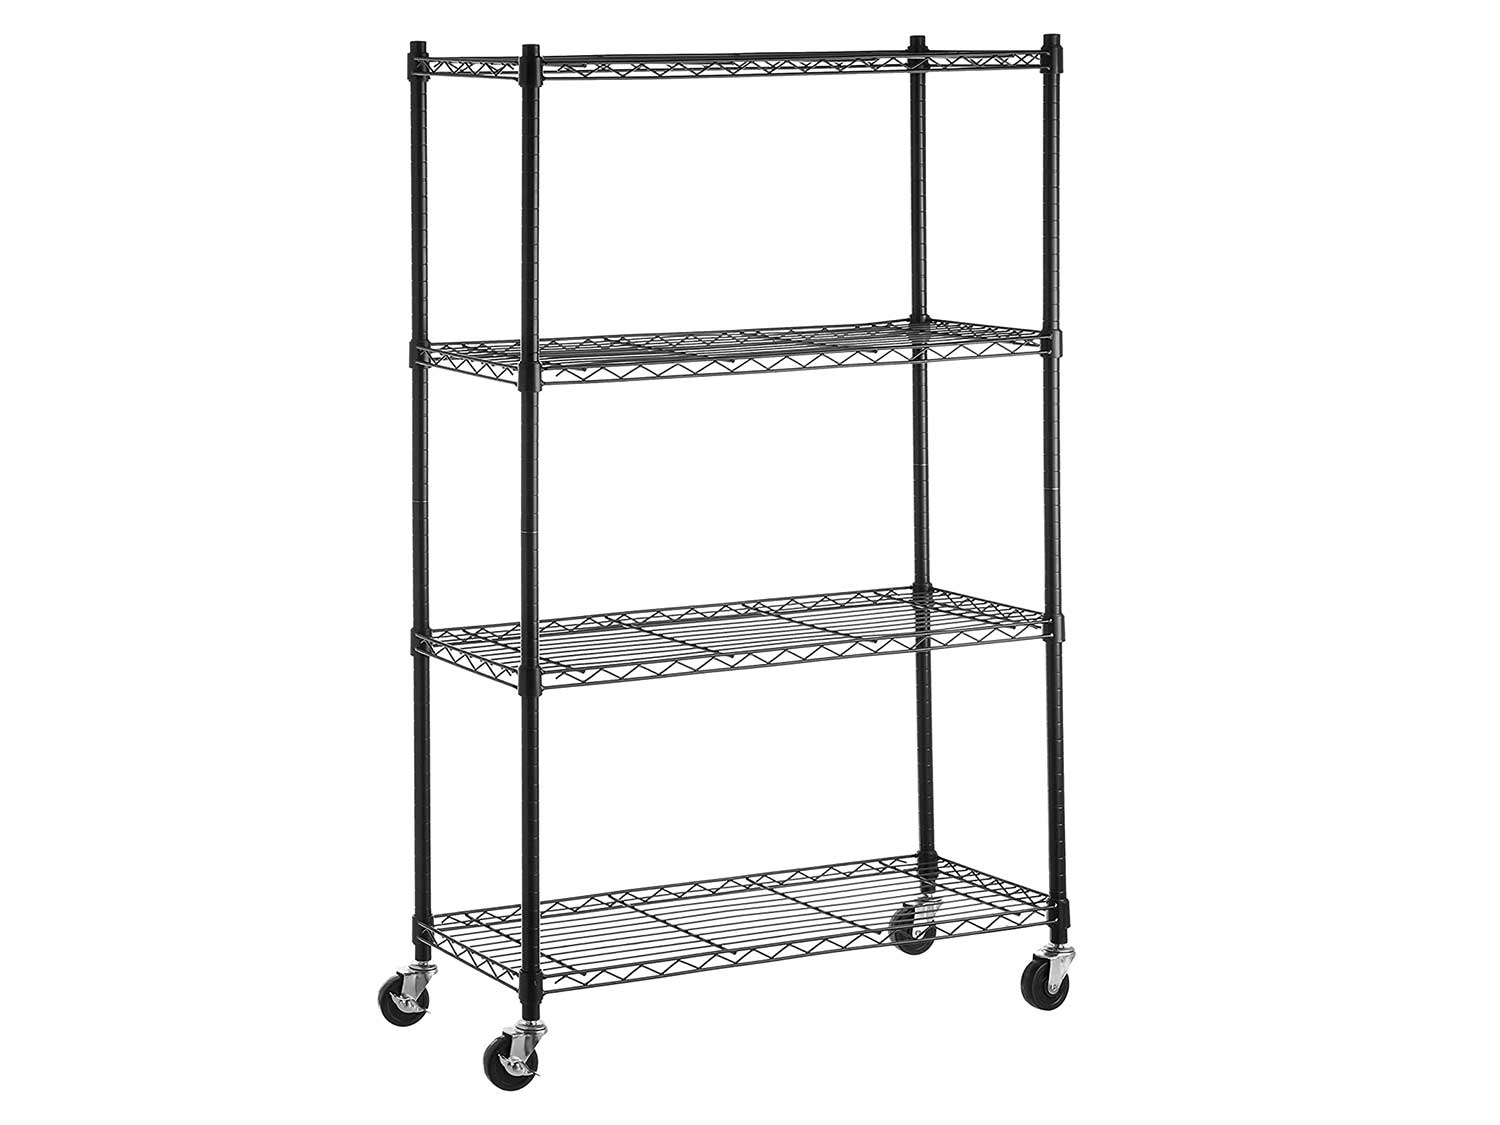 AmazonBasics 4-Shelf Shelving Storage Unit